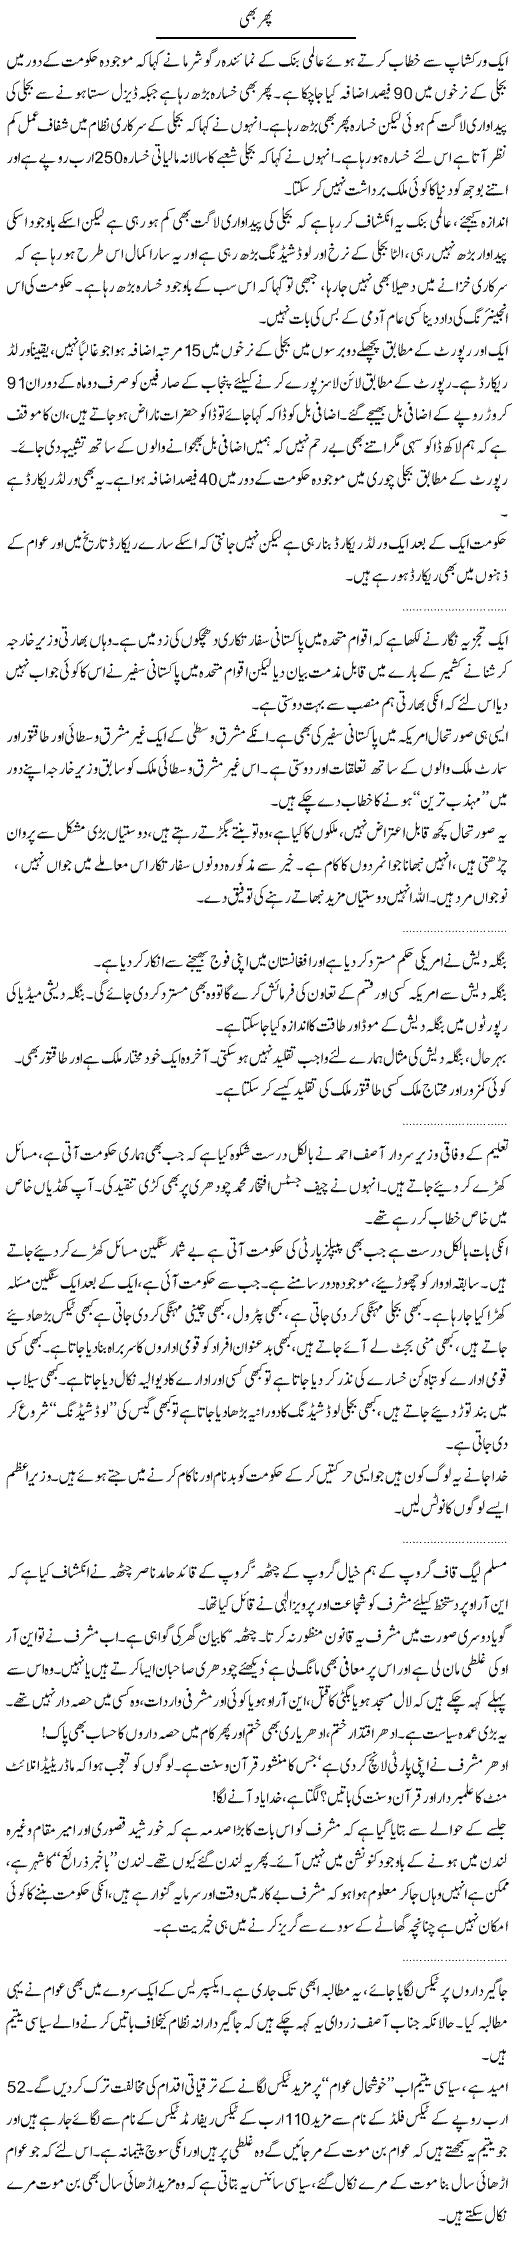 Even Then Express Column Abdullah Tariq 6 October 2010